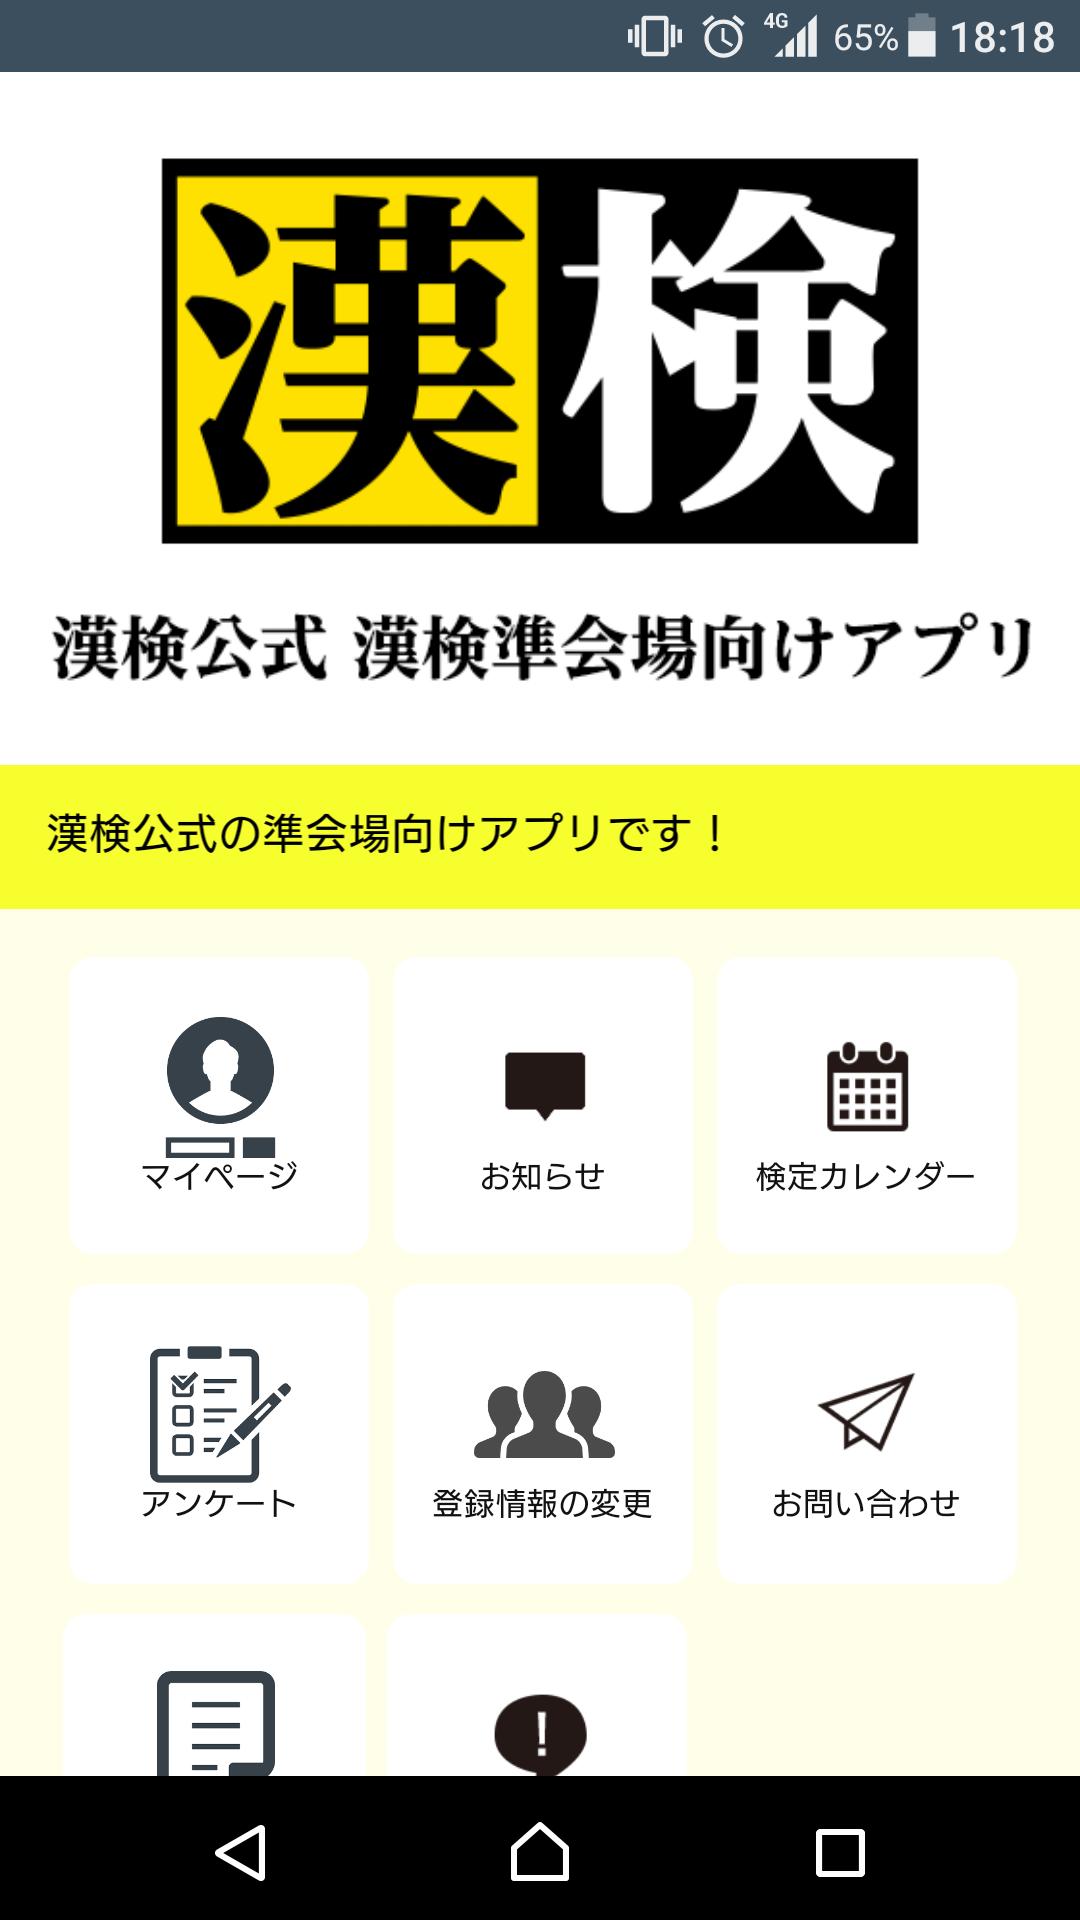 漢検公式 漢検準会場向けアプリ Para Android Apk Baixar